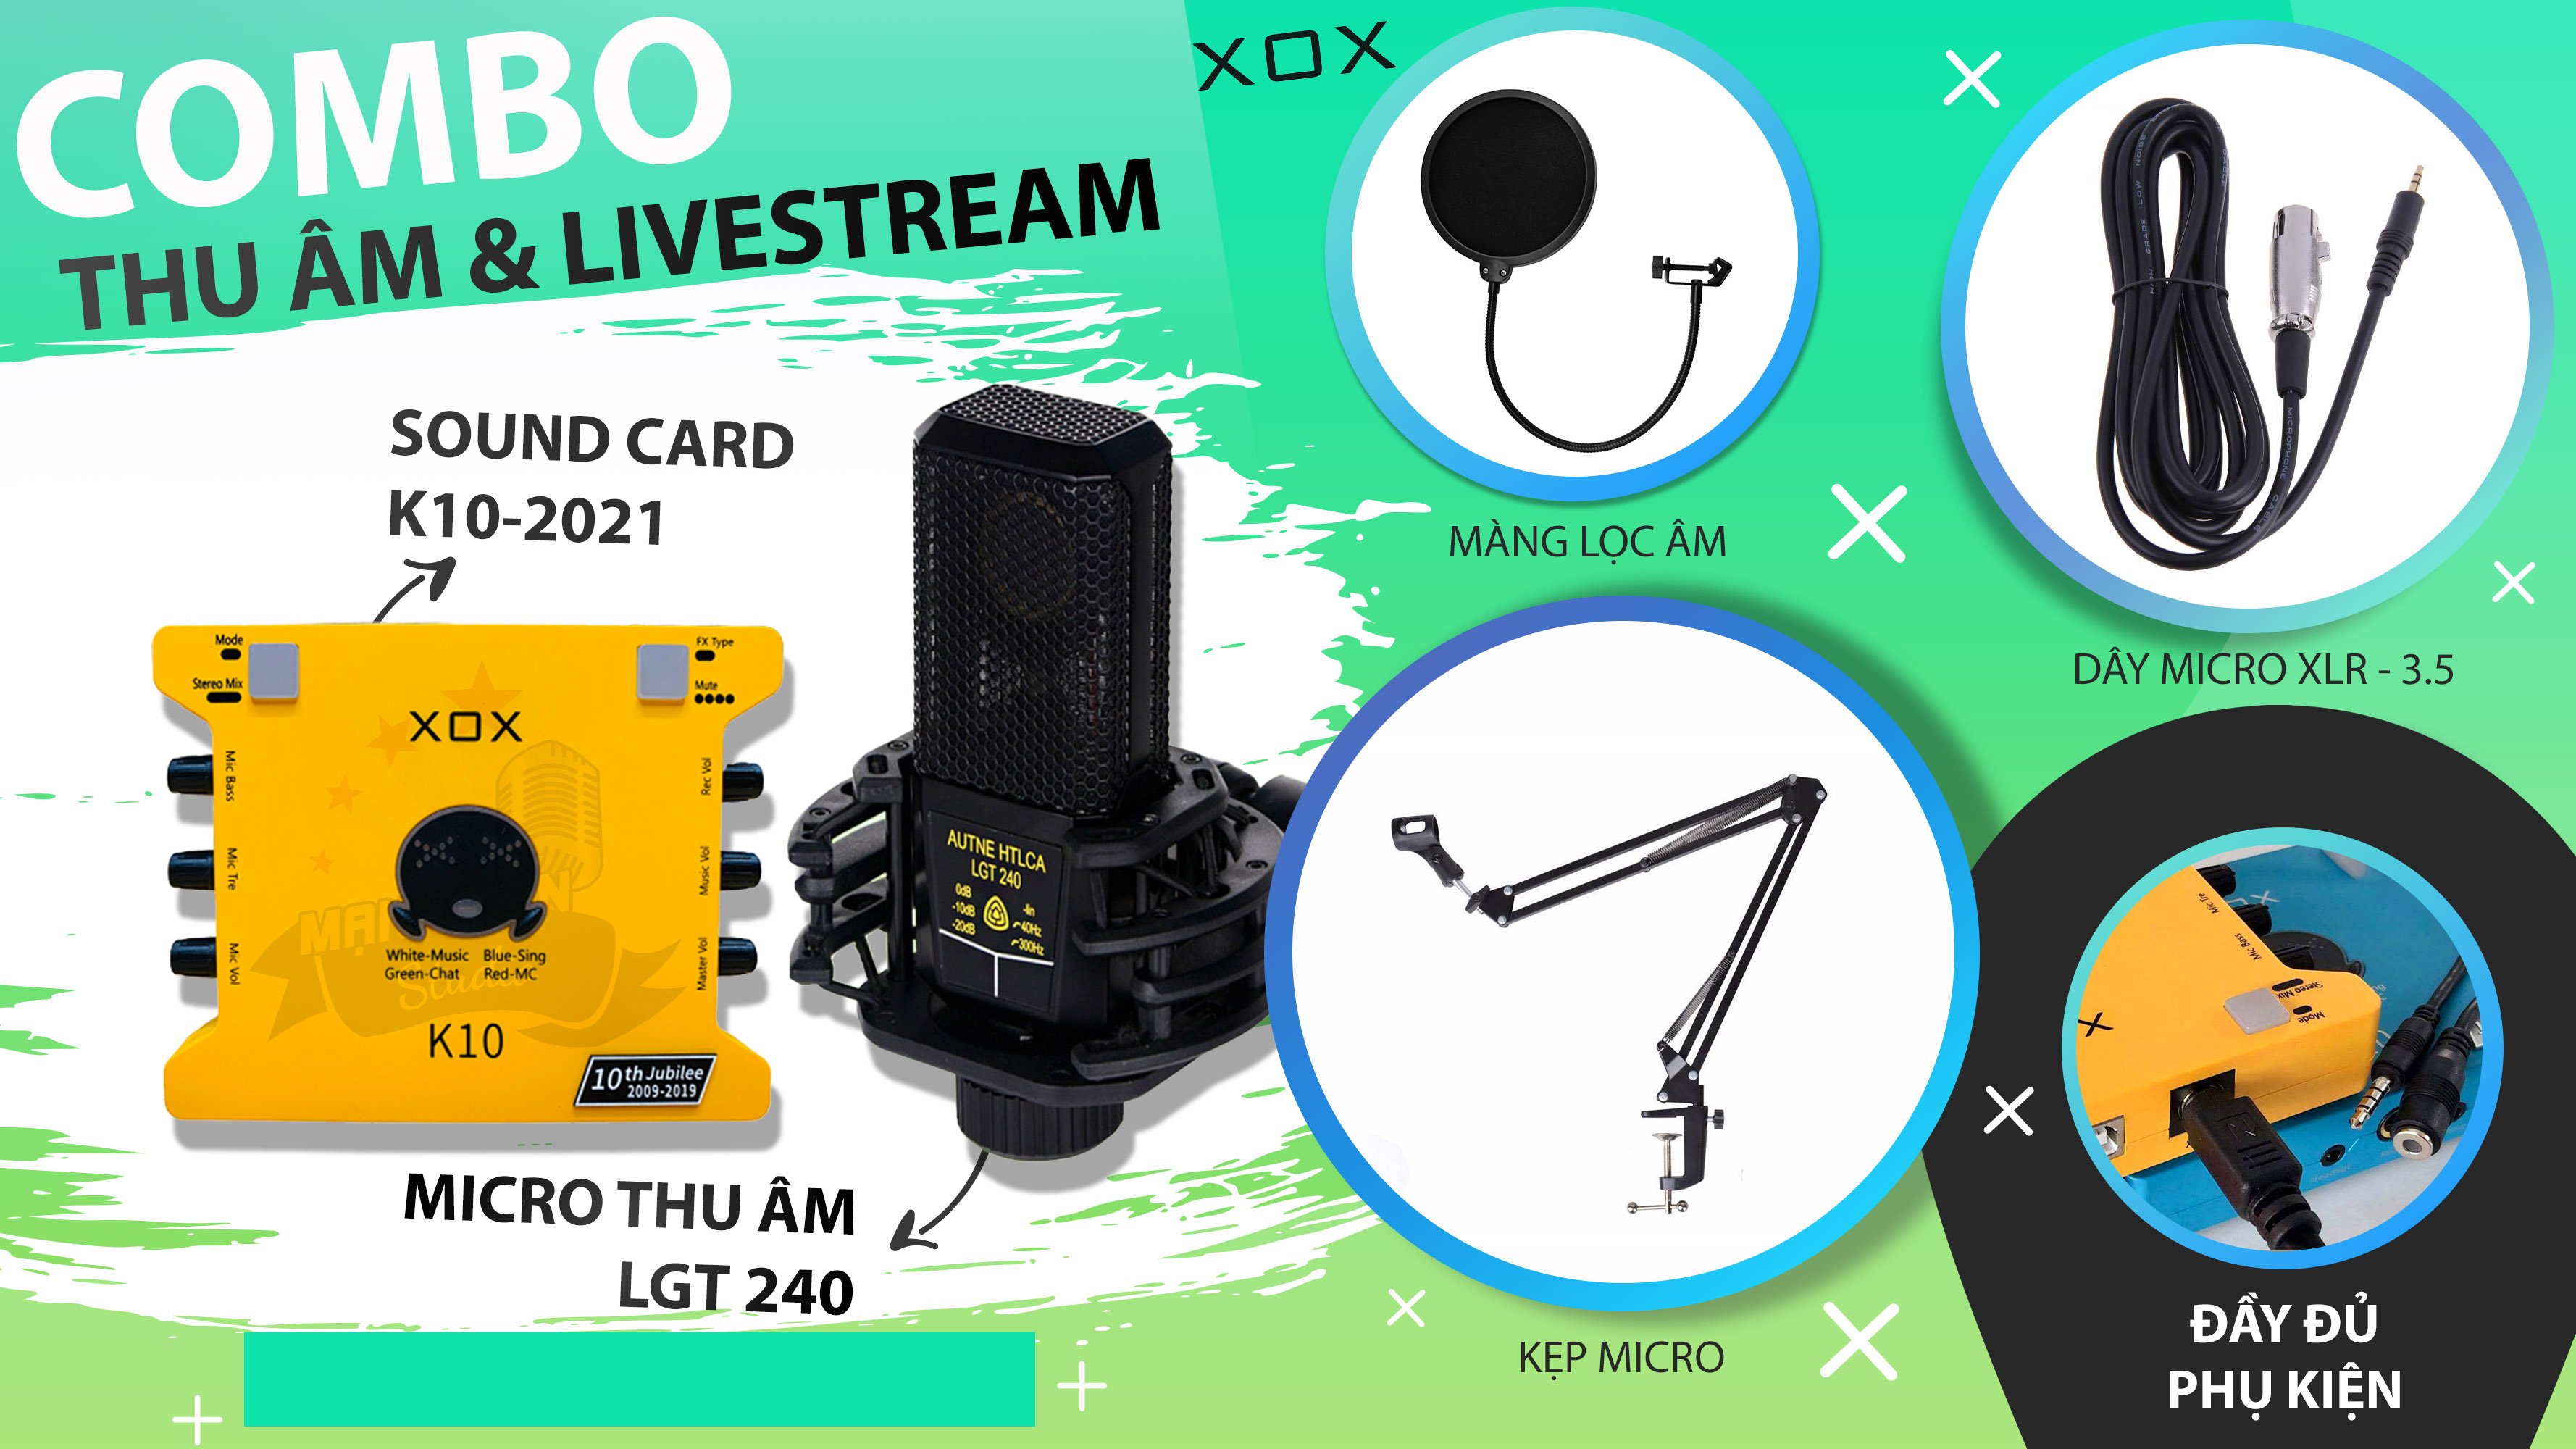 Combo thu âm, livestream Micro LGT 240, Sound card XOX K10 Jubilee - Kèm full phụ kiện kẹp micro, màng lọc, tai nghe, giá đỡ ĐT - Hỗ trợ thu âm, karaoke online chuyên nghiệp - Hàng nhập khẩu